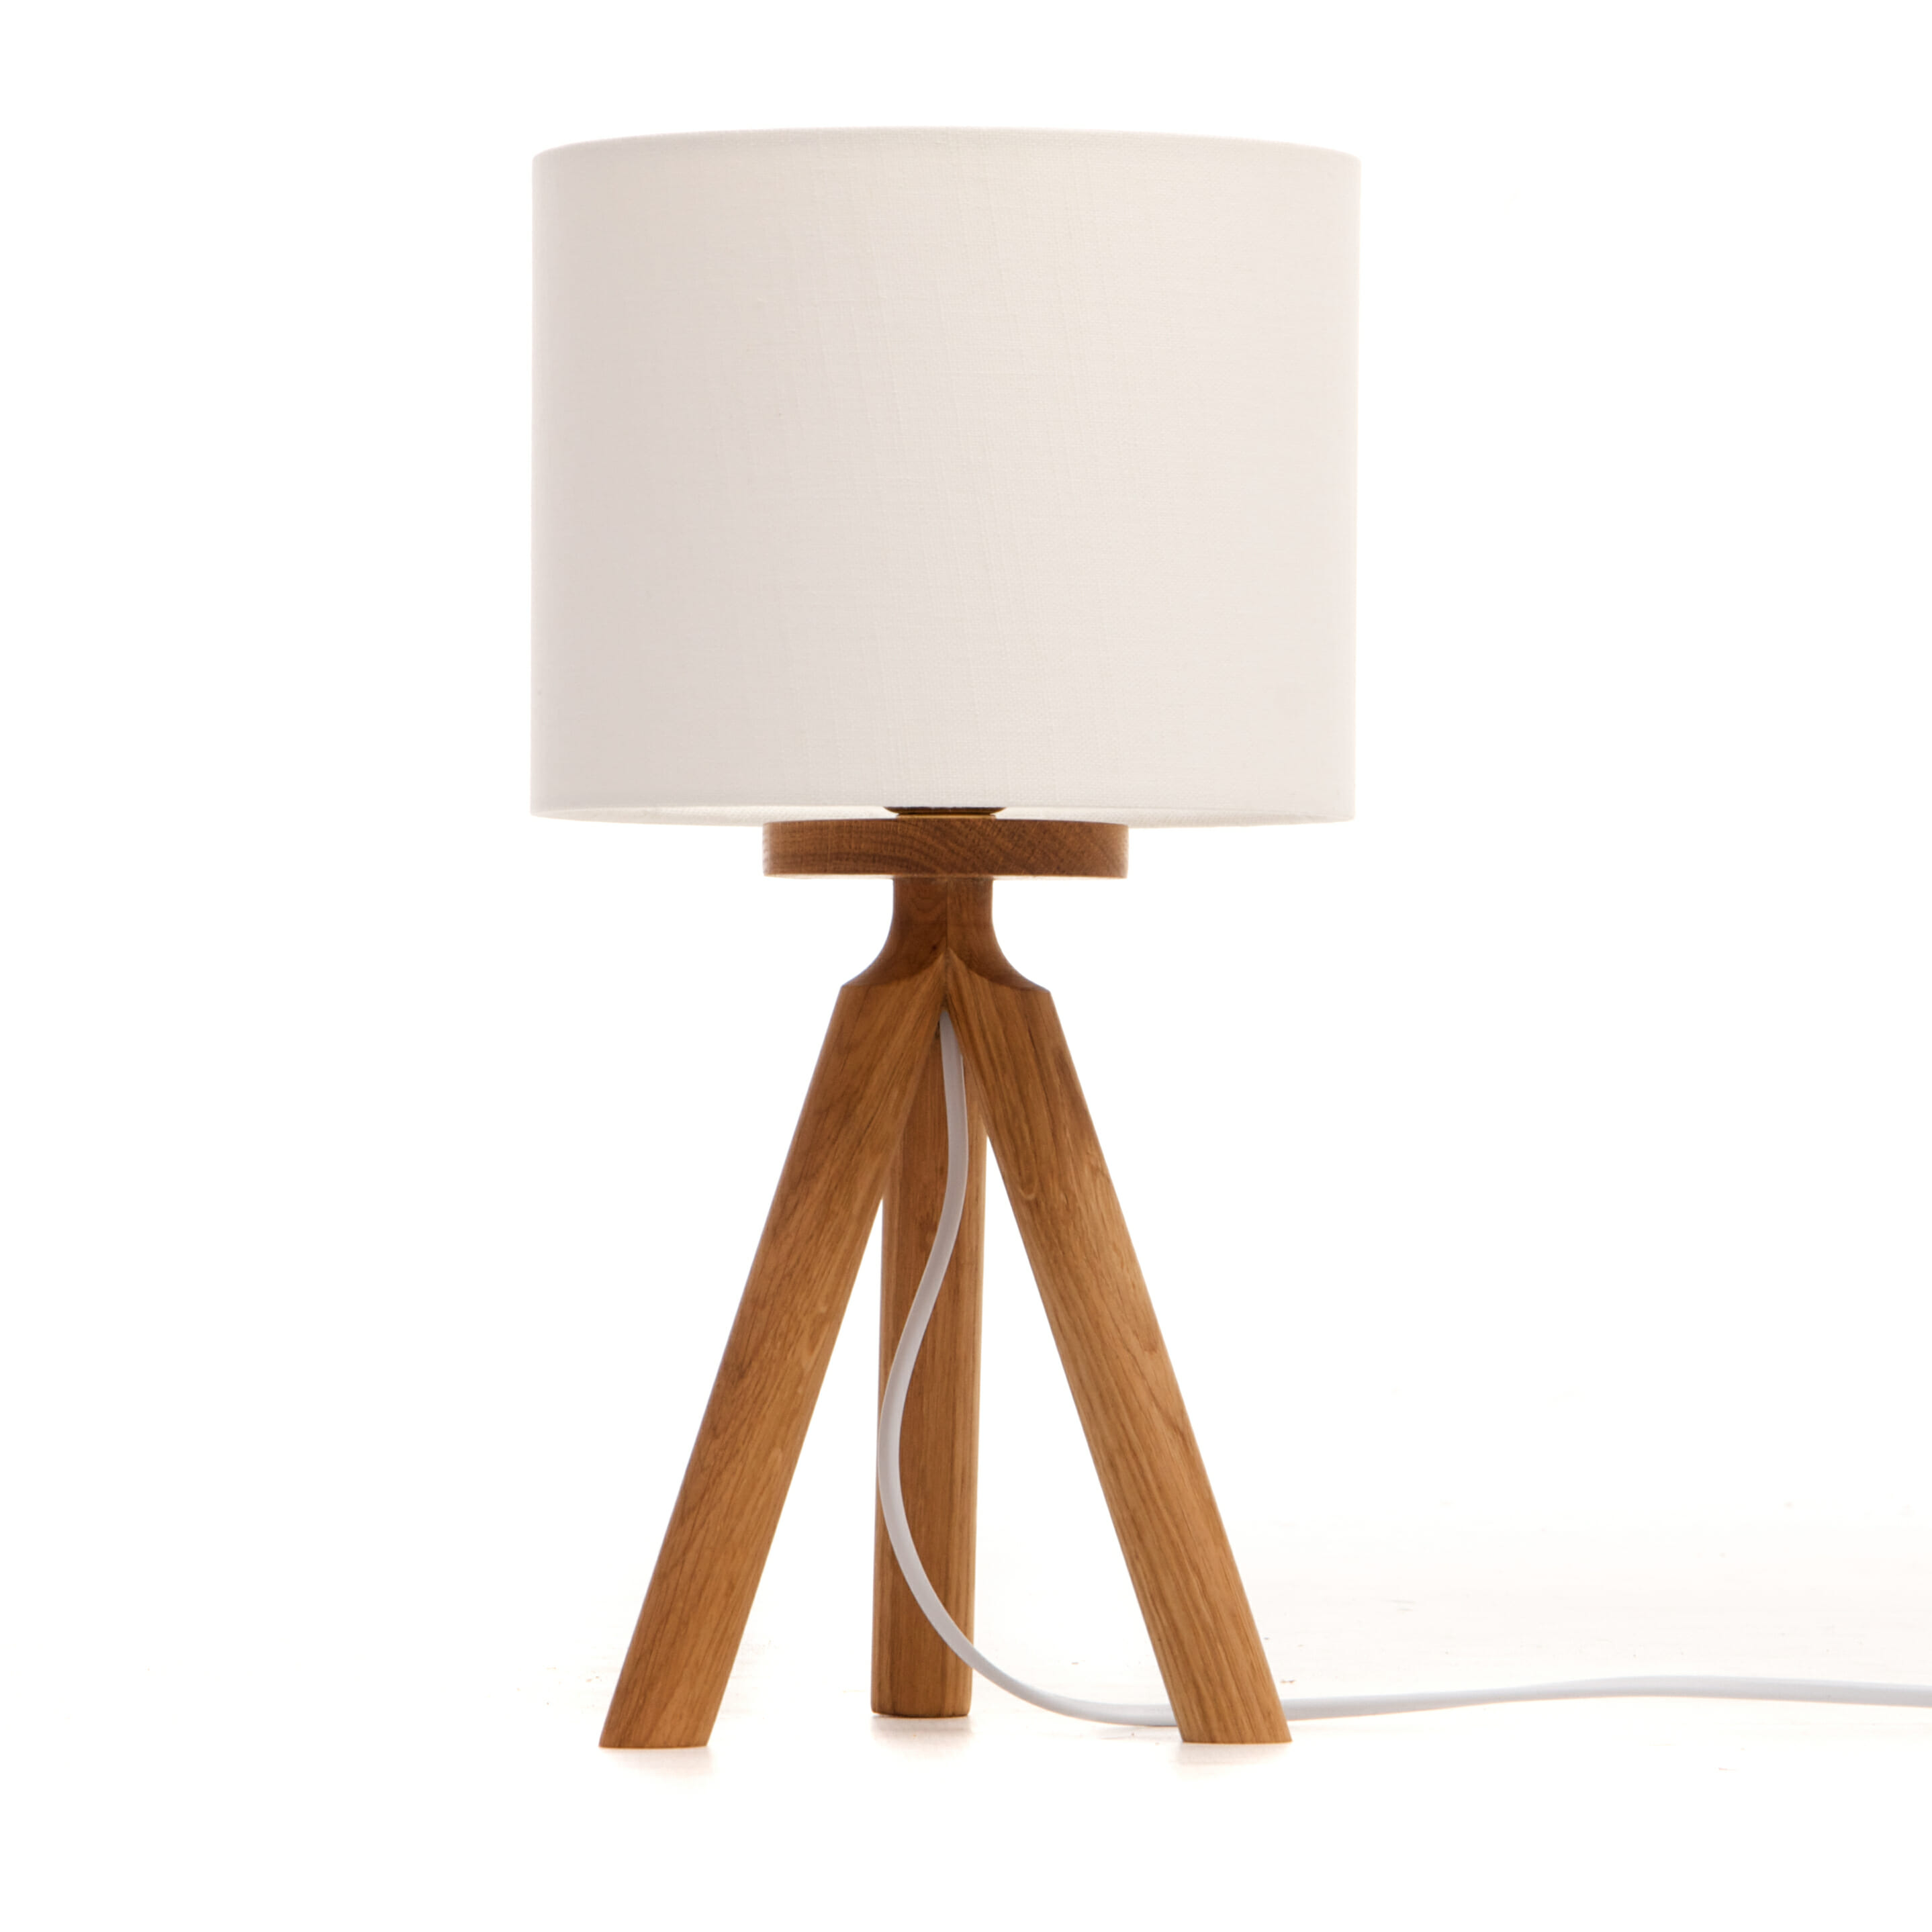 Oak tripod bedside table lamp